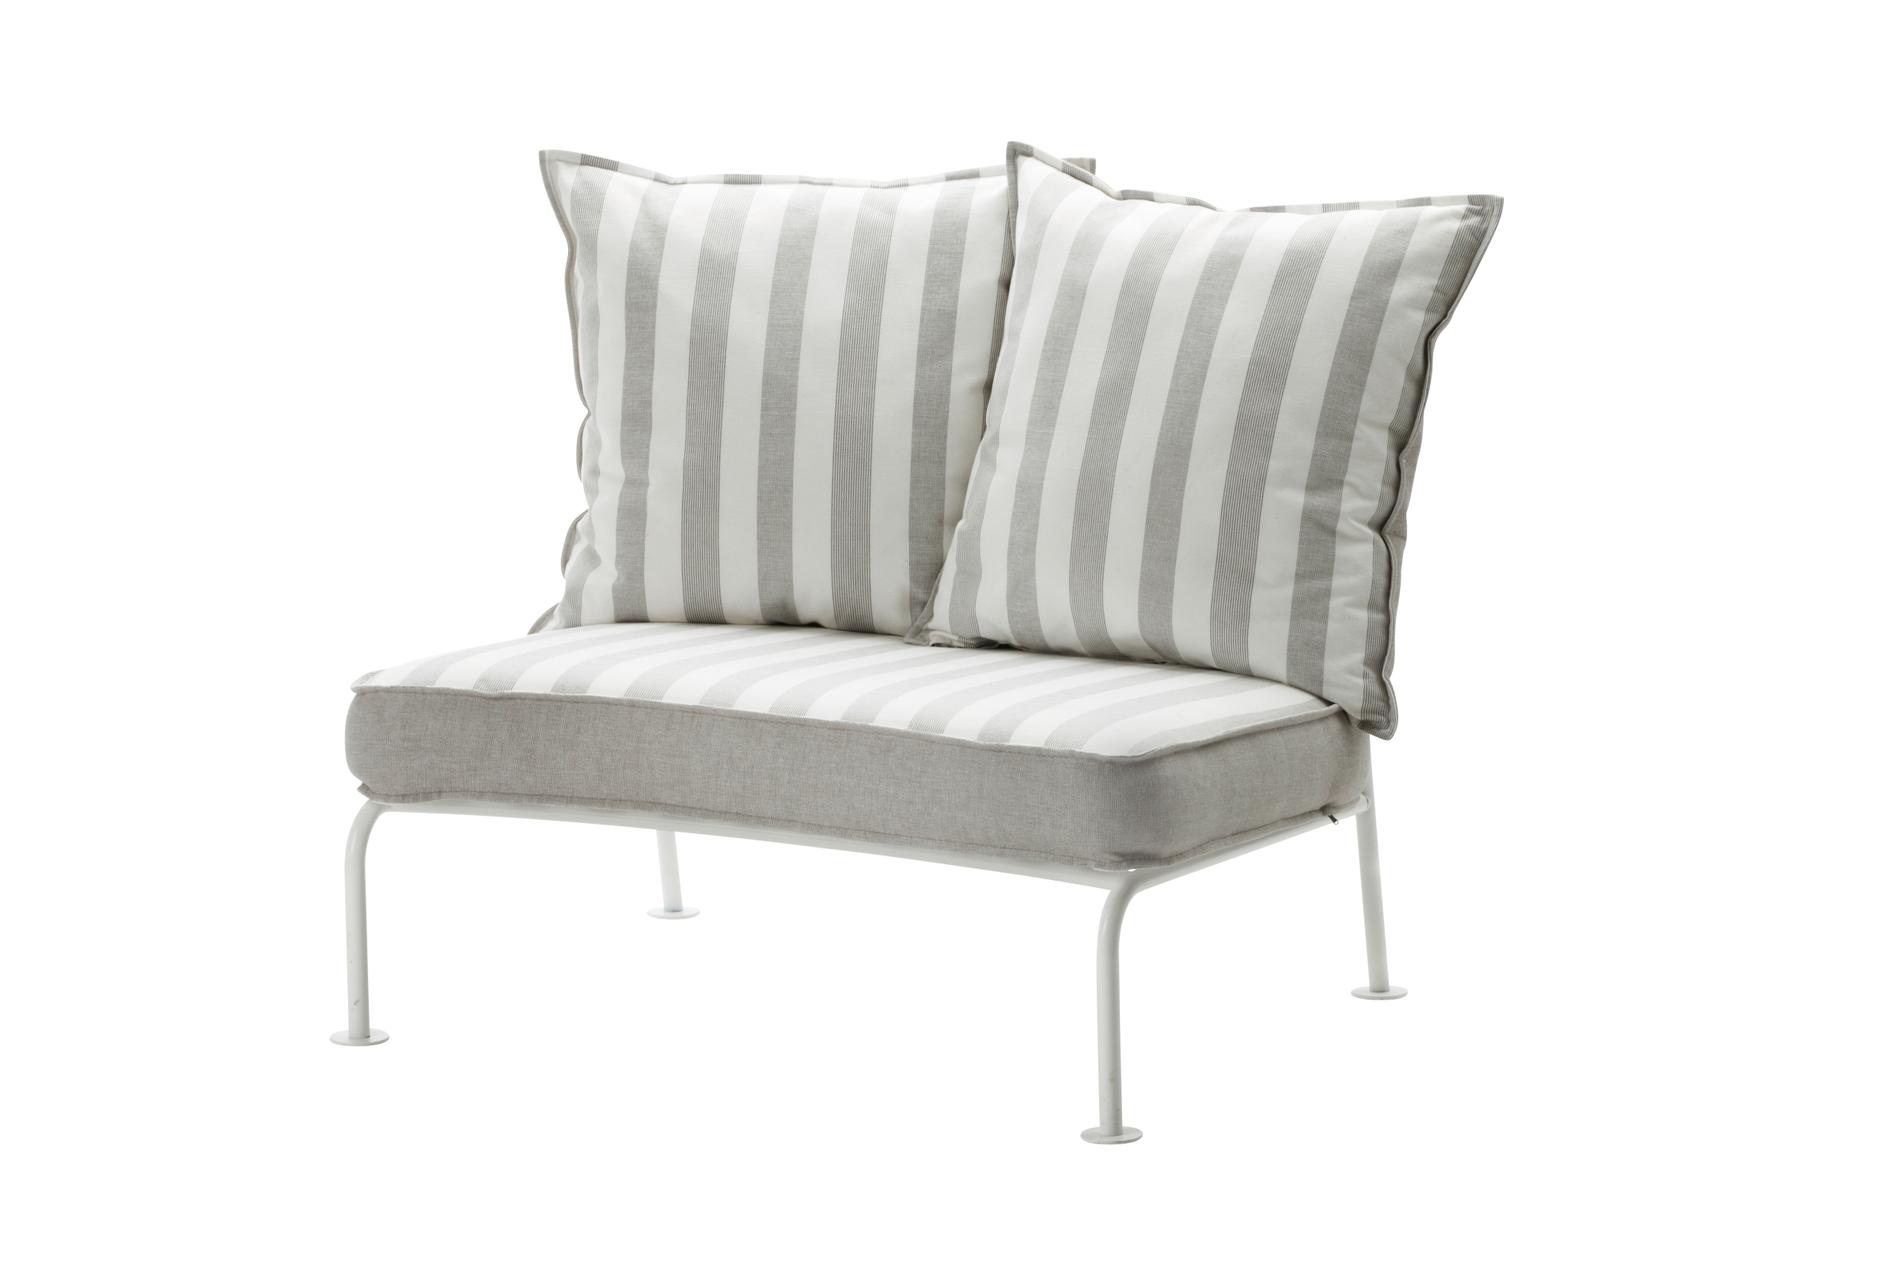 Lilla nätta soffan ”Roxö” passar perfekt på den lilla balkongen, Ikea, 1199 kr